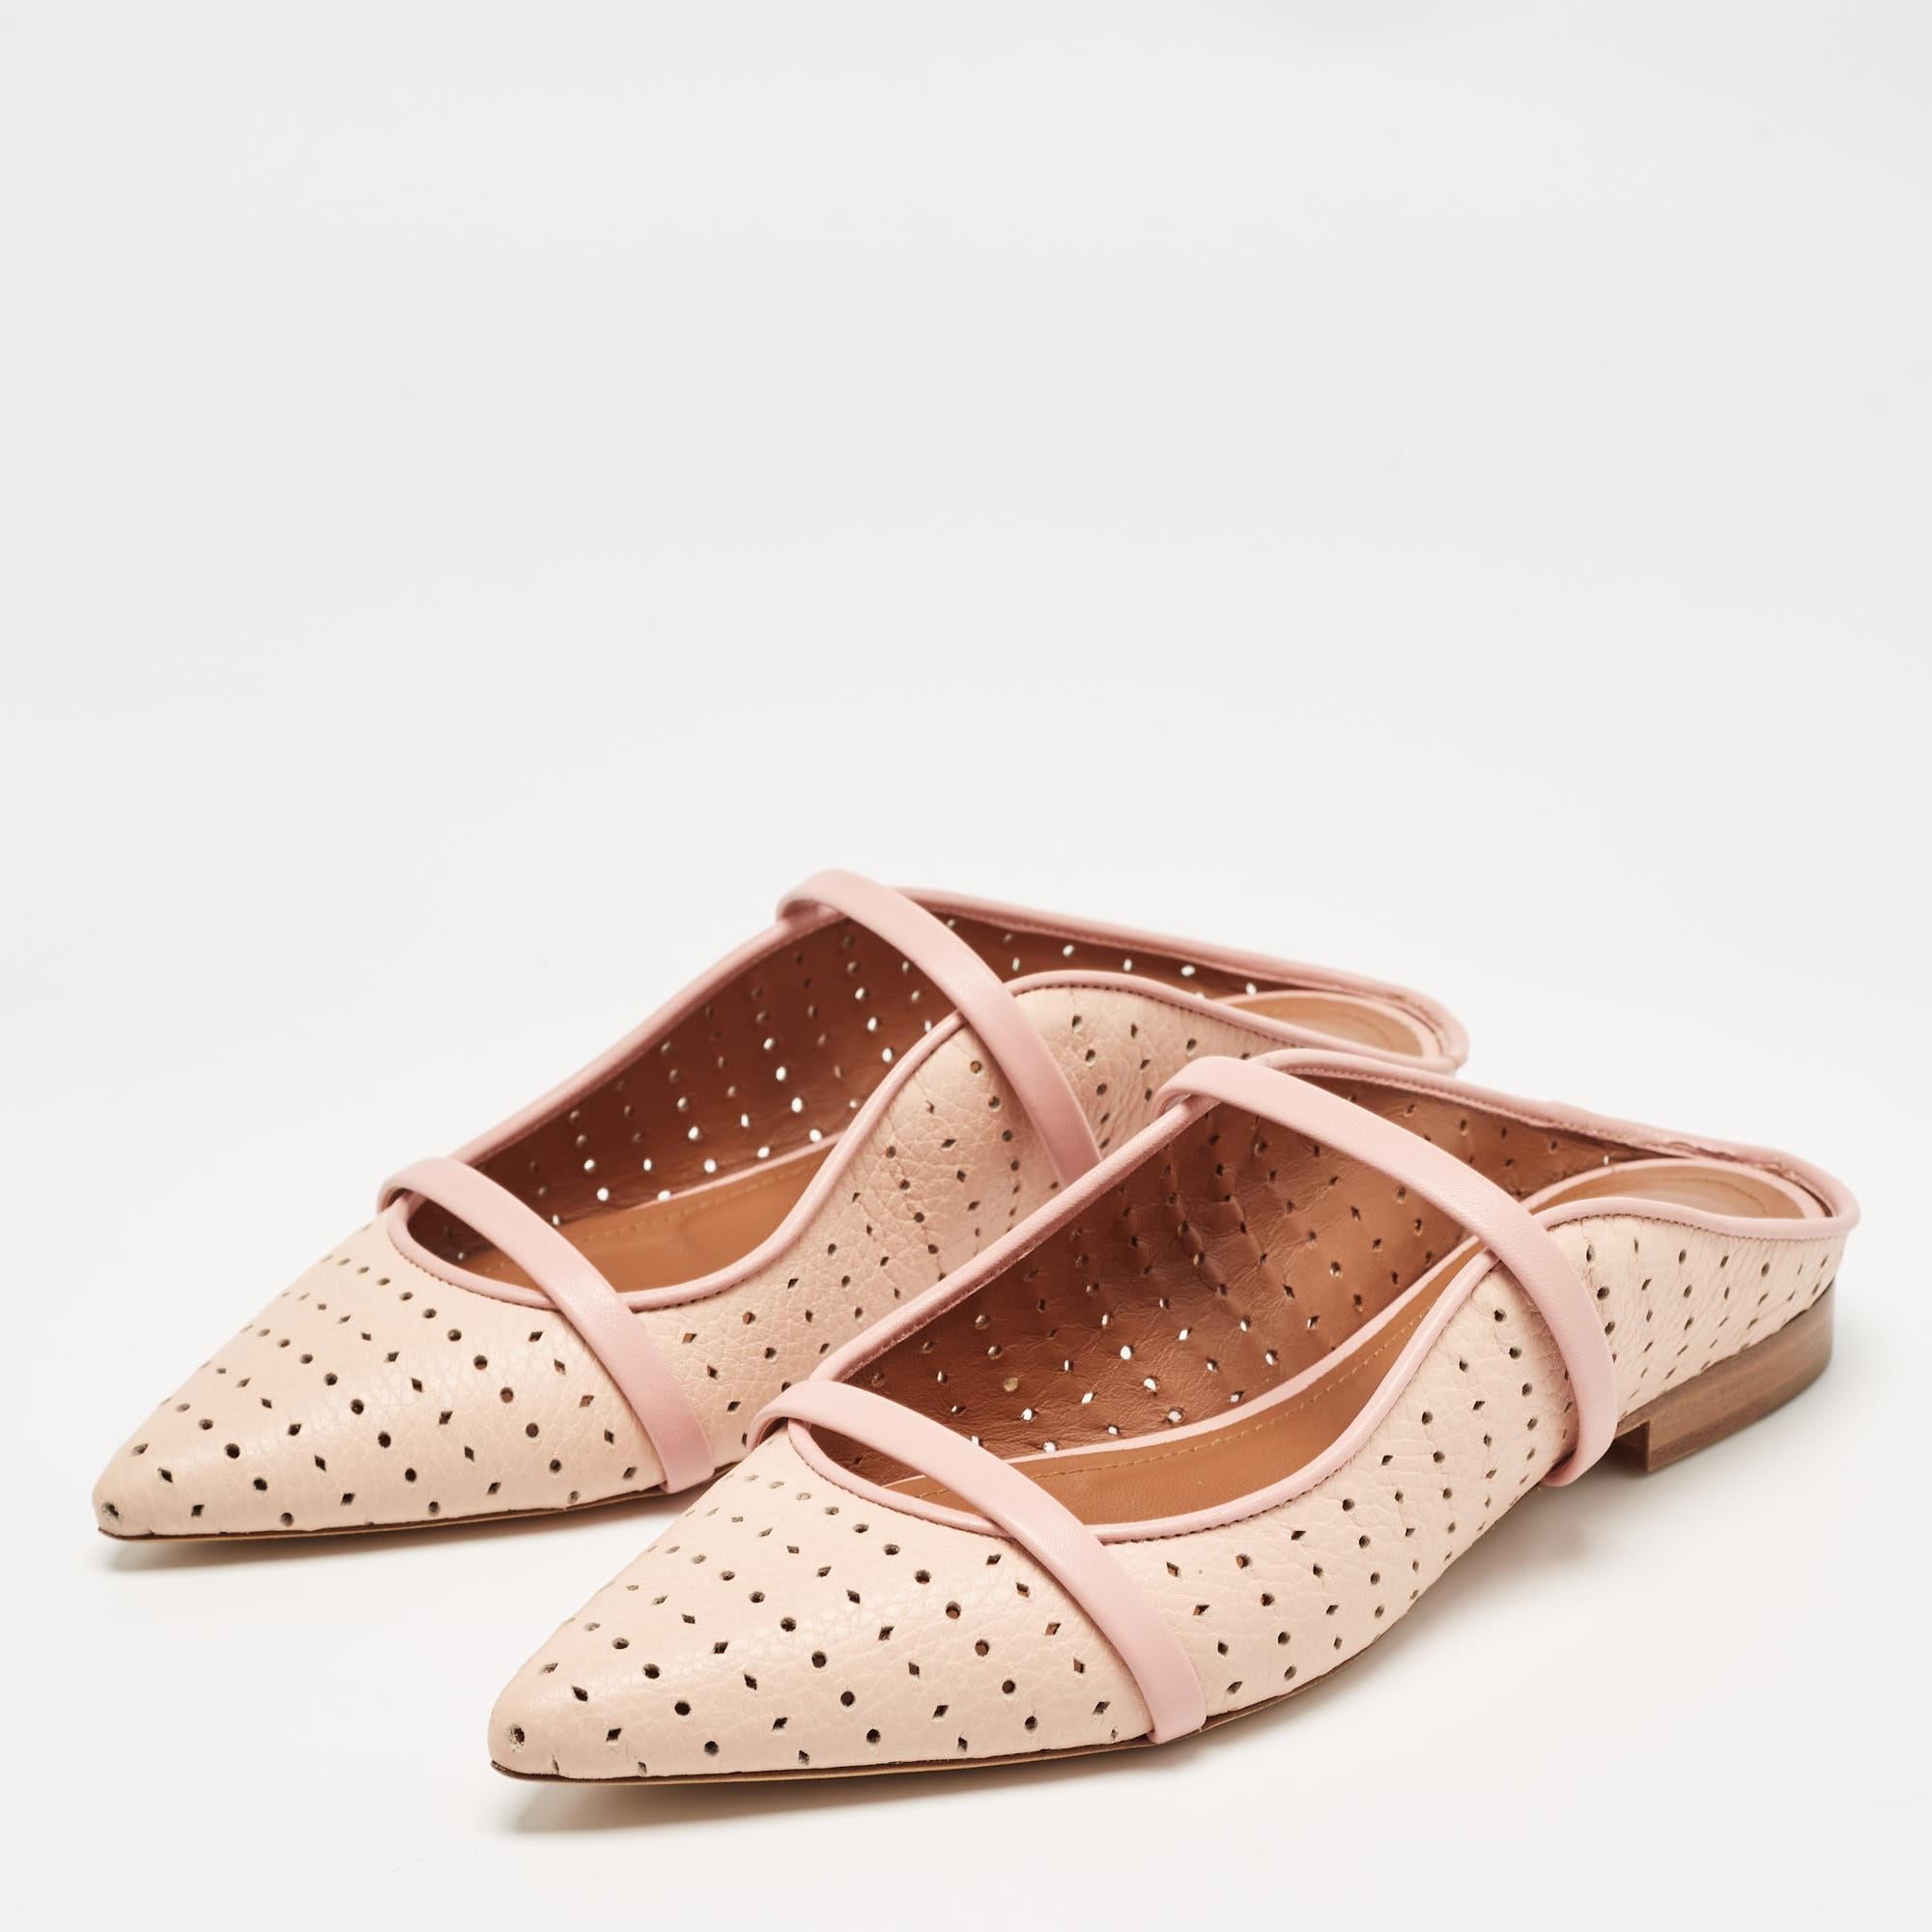 Encadrez vos pieds avec ces sandales plates Malone Souliers. Créées à partir des meilleurs matériaux, les chaussures plates sont parfaites avec des ourlets courts, midi et maxi.

